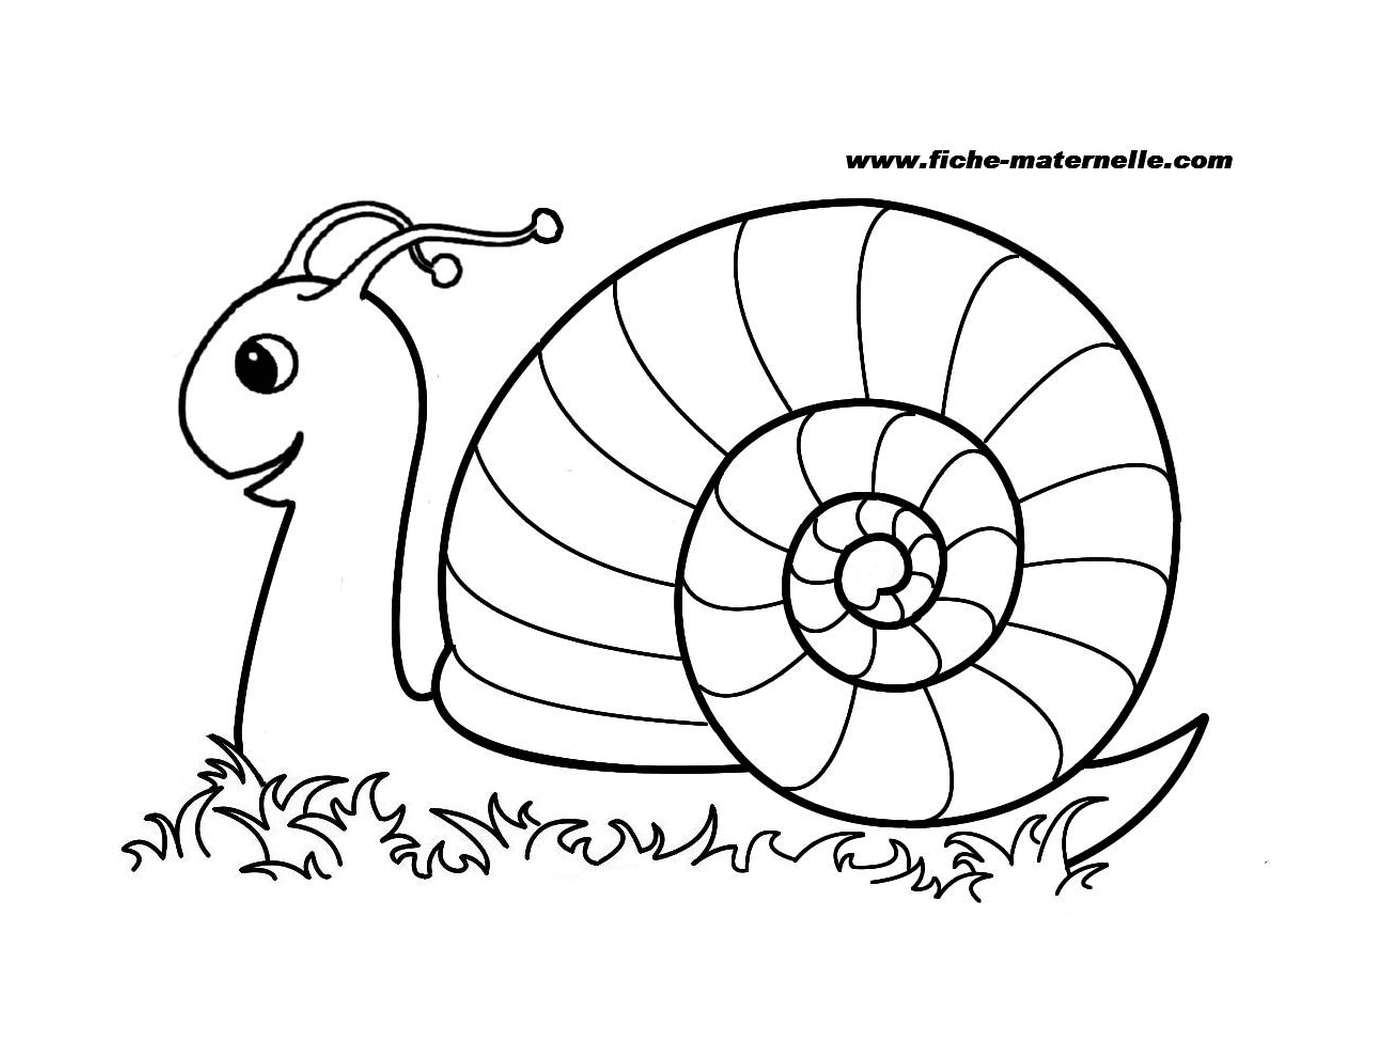  缓慢而好奇的蜗牛 